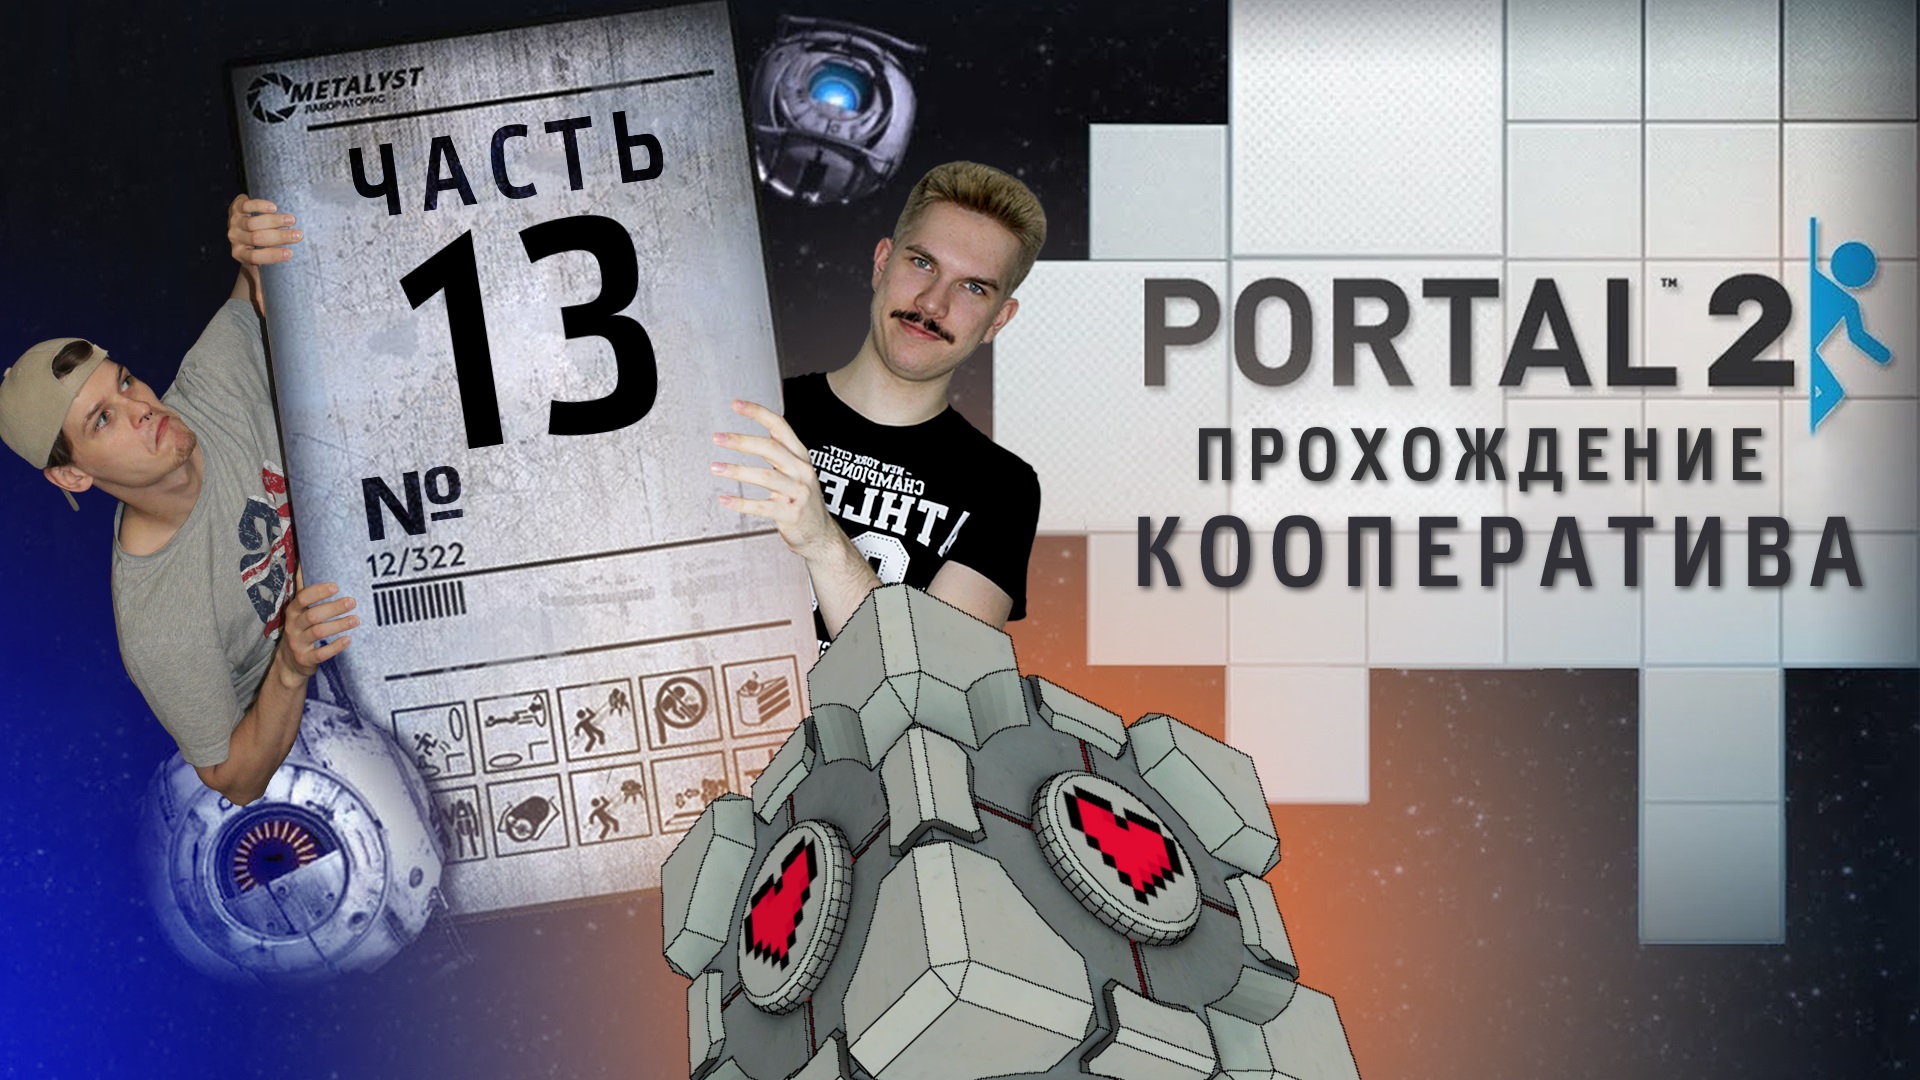 Portal 2 кооператив на одном компьютере фото 47